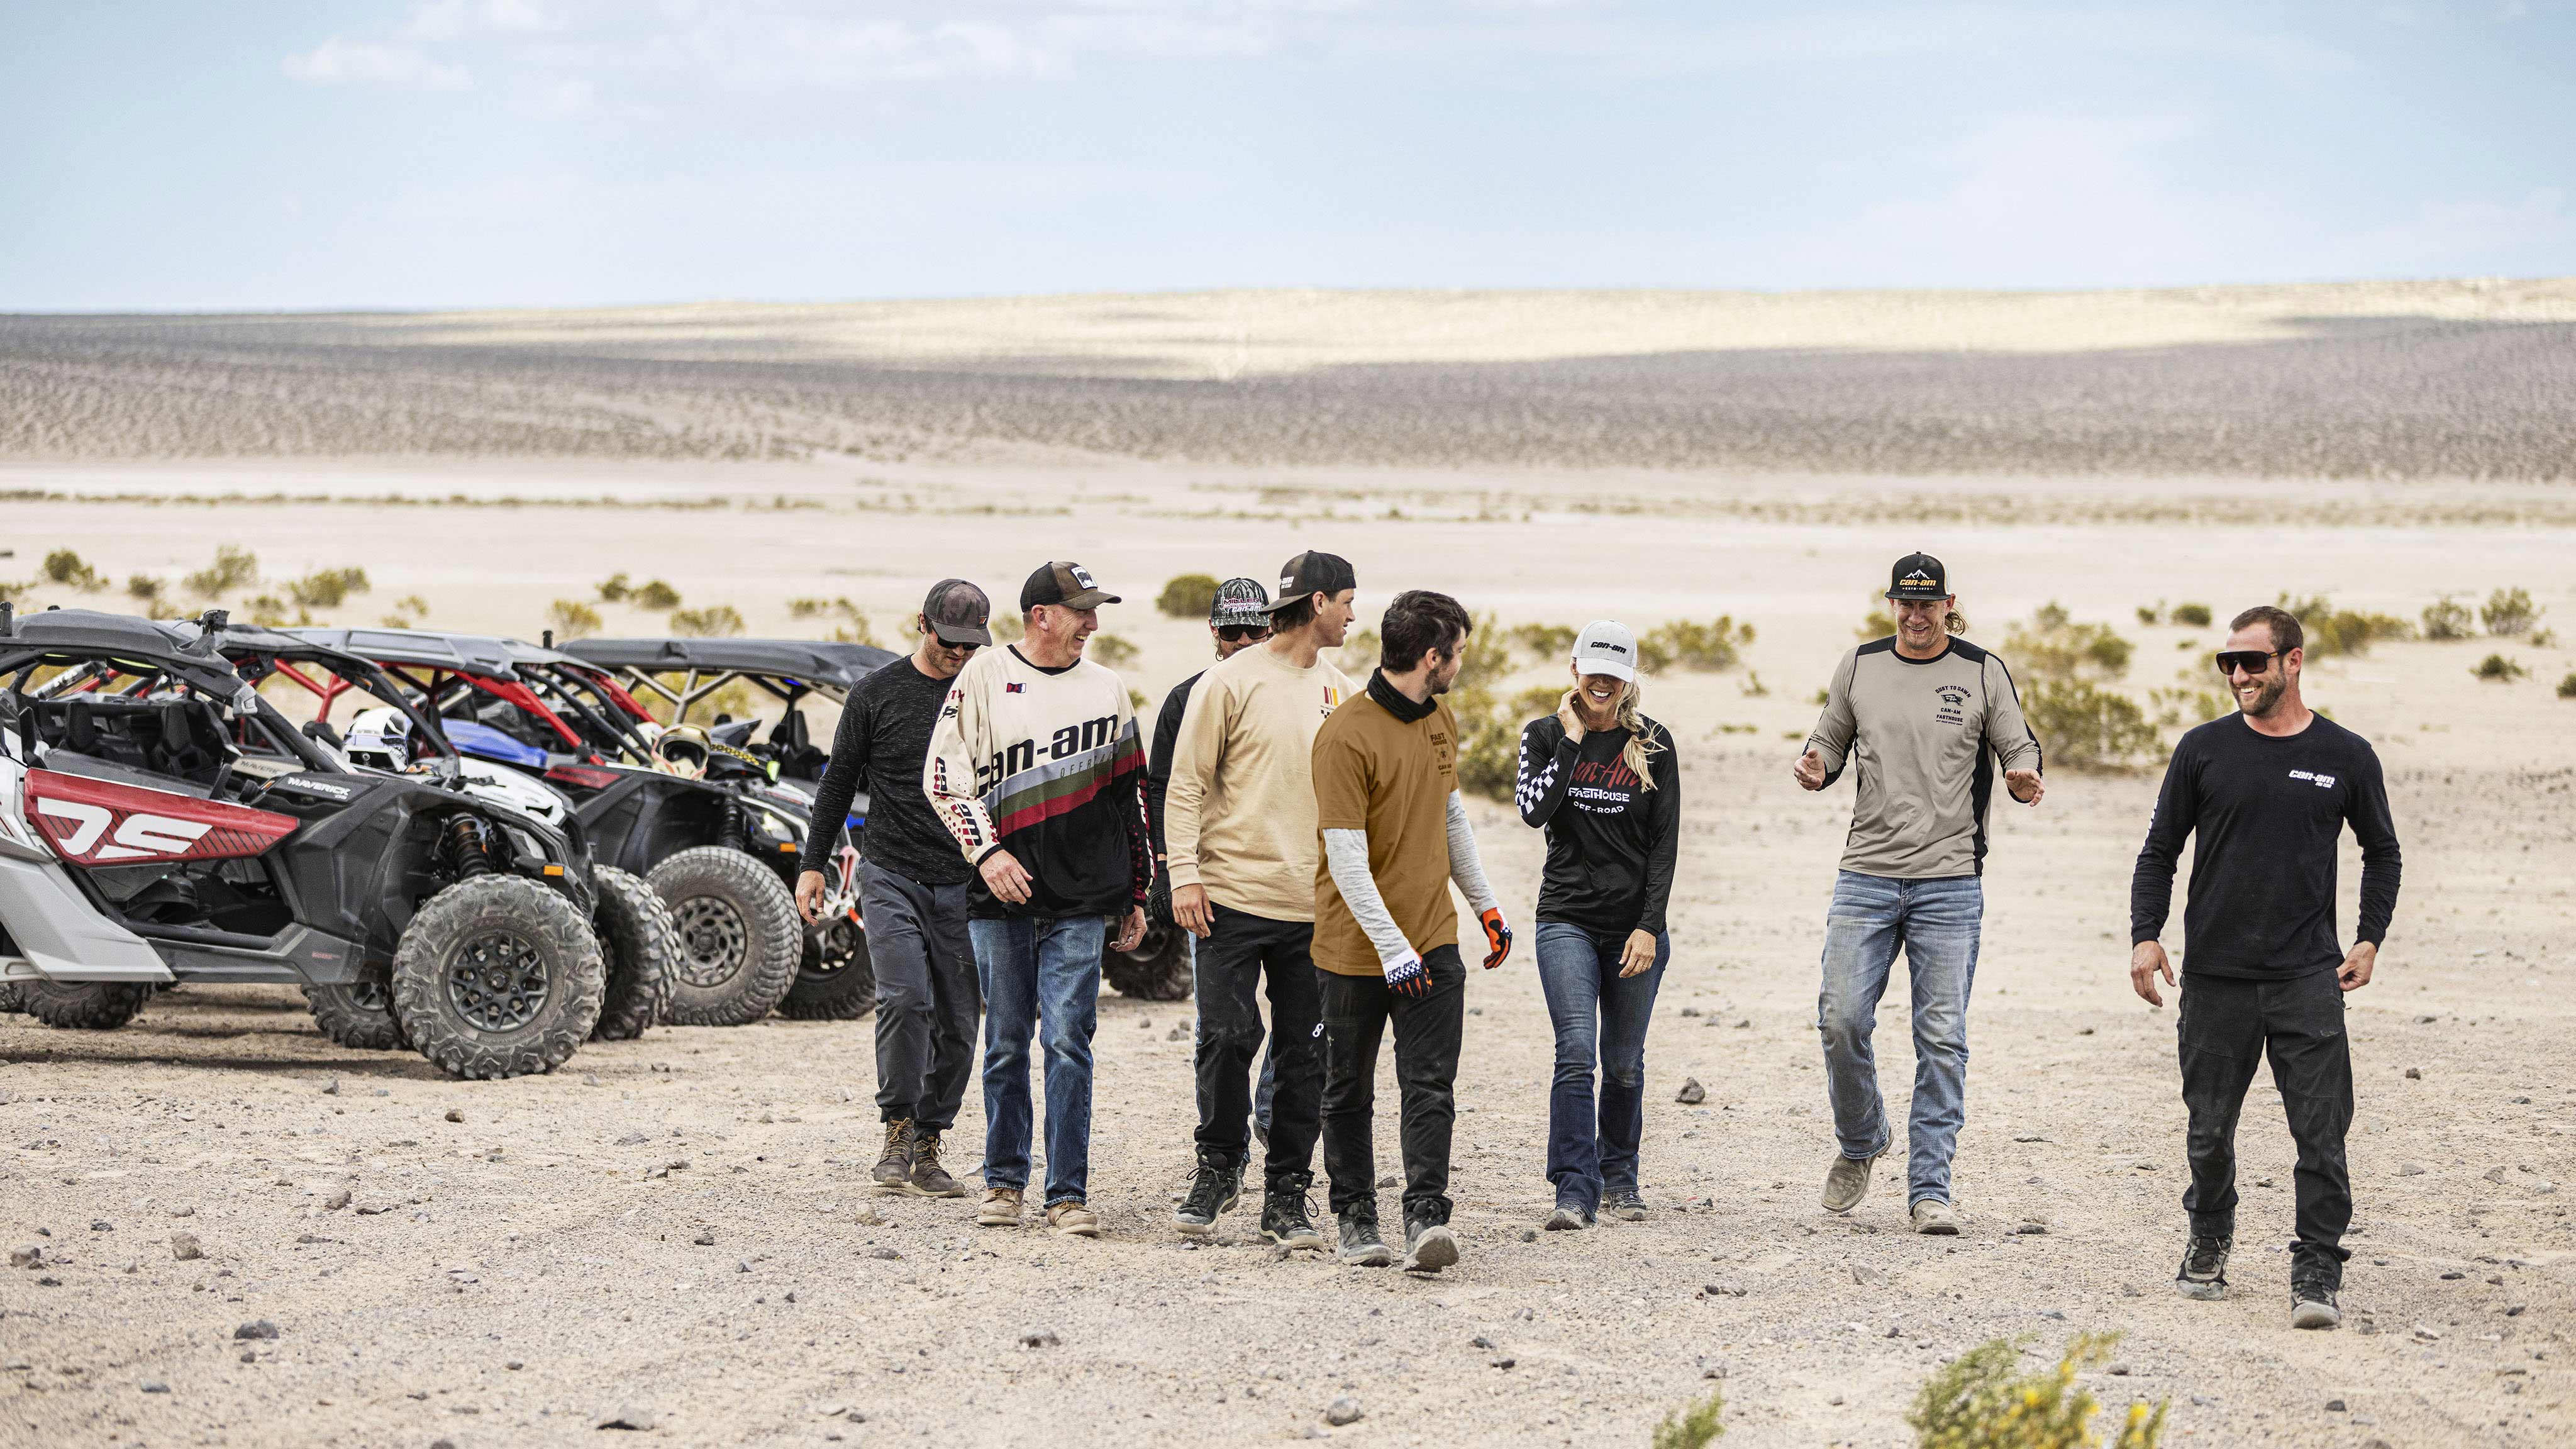 Oito pilotos caminhando em frente no deserto, com três veículos Can-Am Maverick ao fundo.